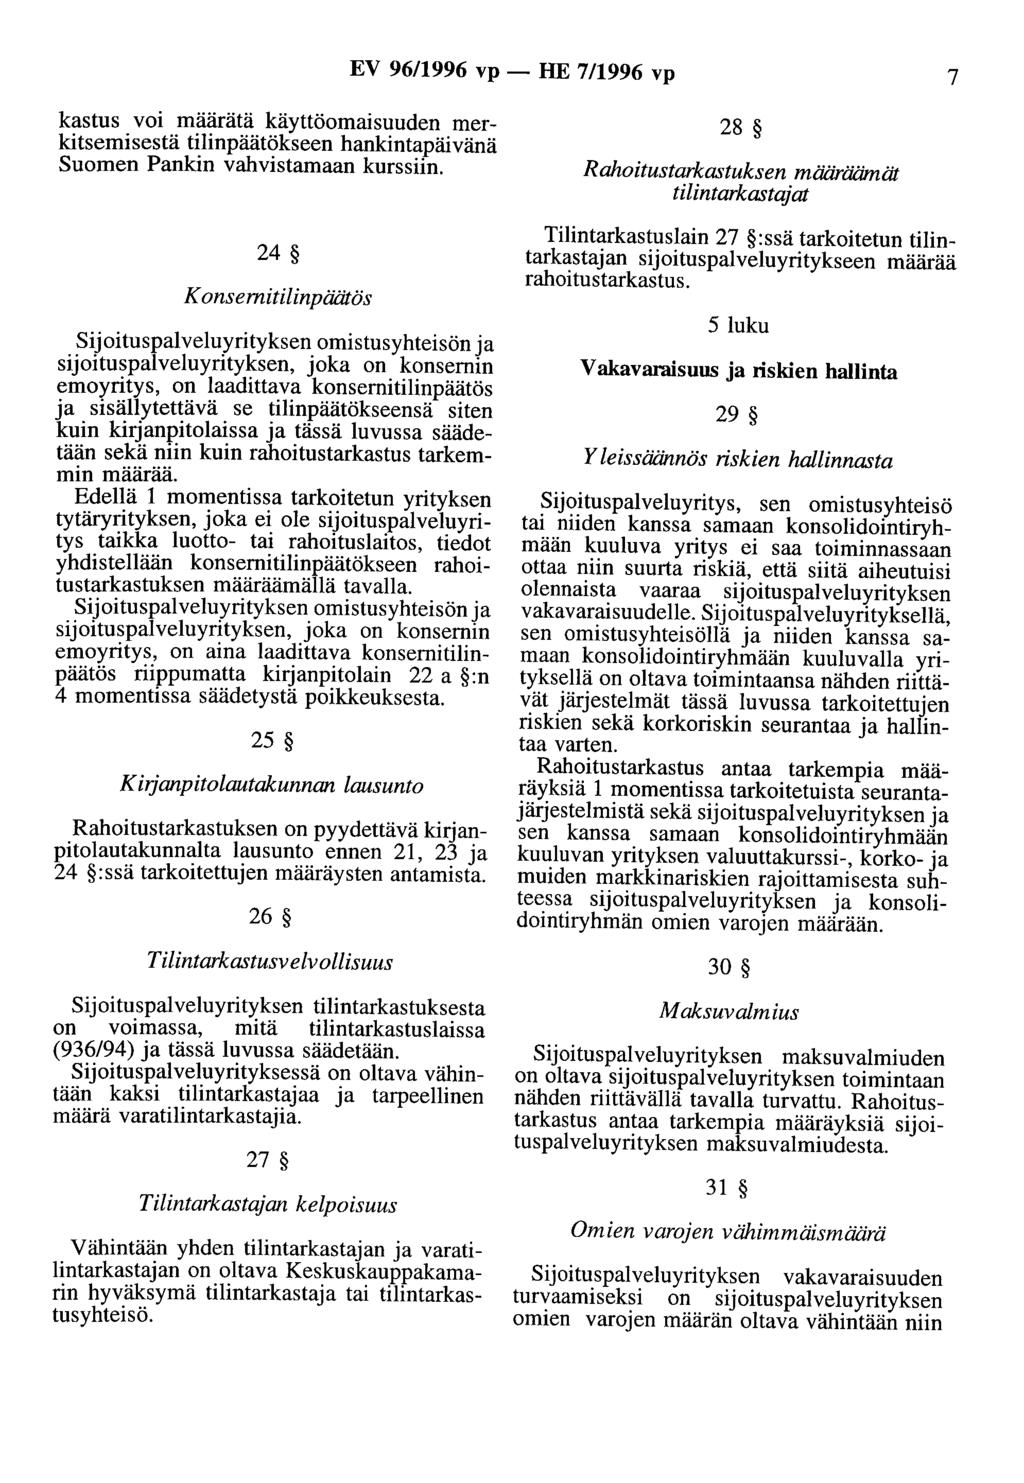 EV 96/1996 vp - HE 7/1996 vp 7 kastus voi määrätä käyttöomaisuuden merkitsemisestä tilinpäätökseen hankintapäivänä Suomen Pankin vahvistamaan kurssiin.